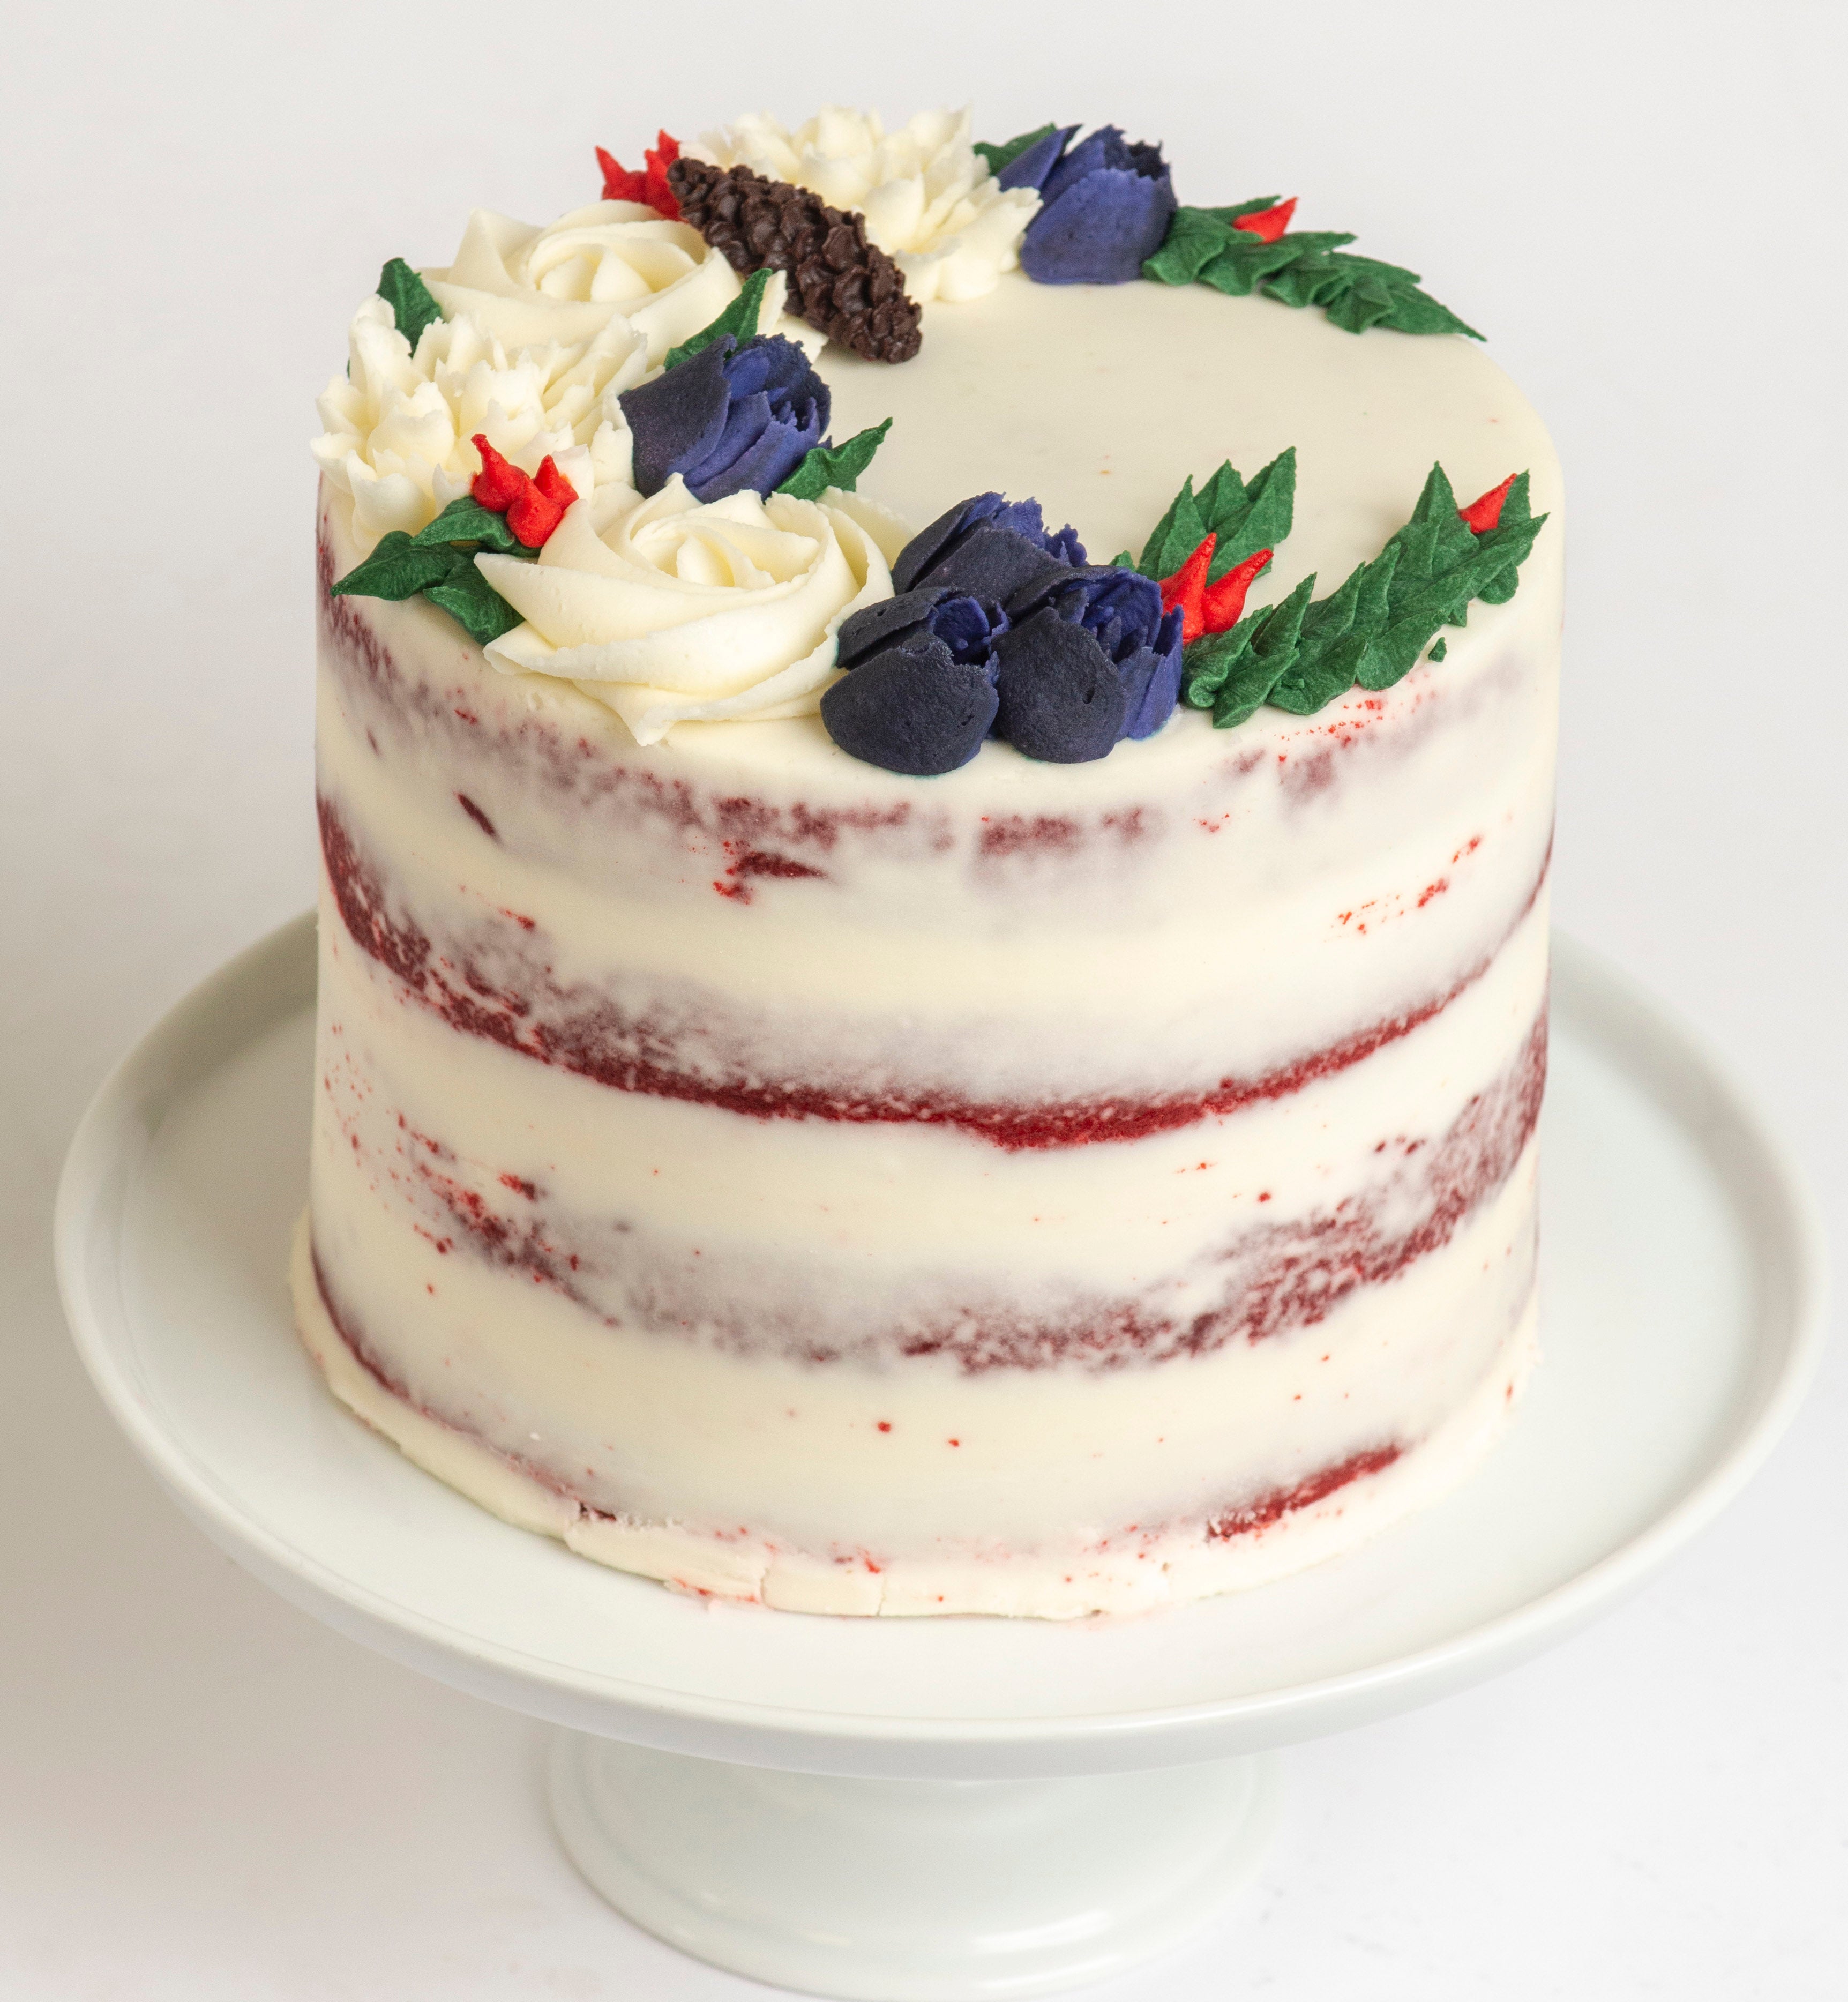 Festive Holiday 4 Layer Red Velvet Cake